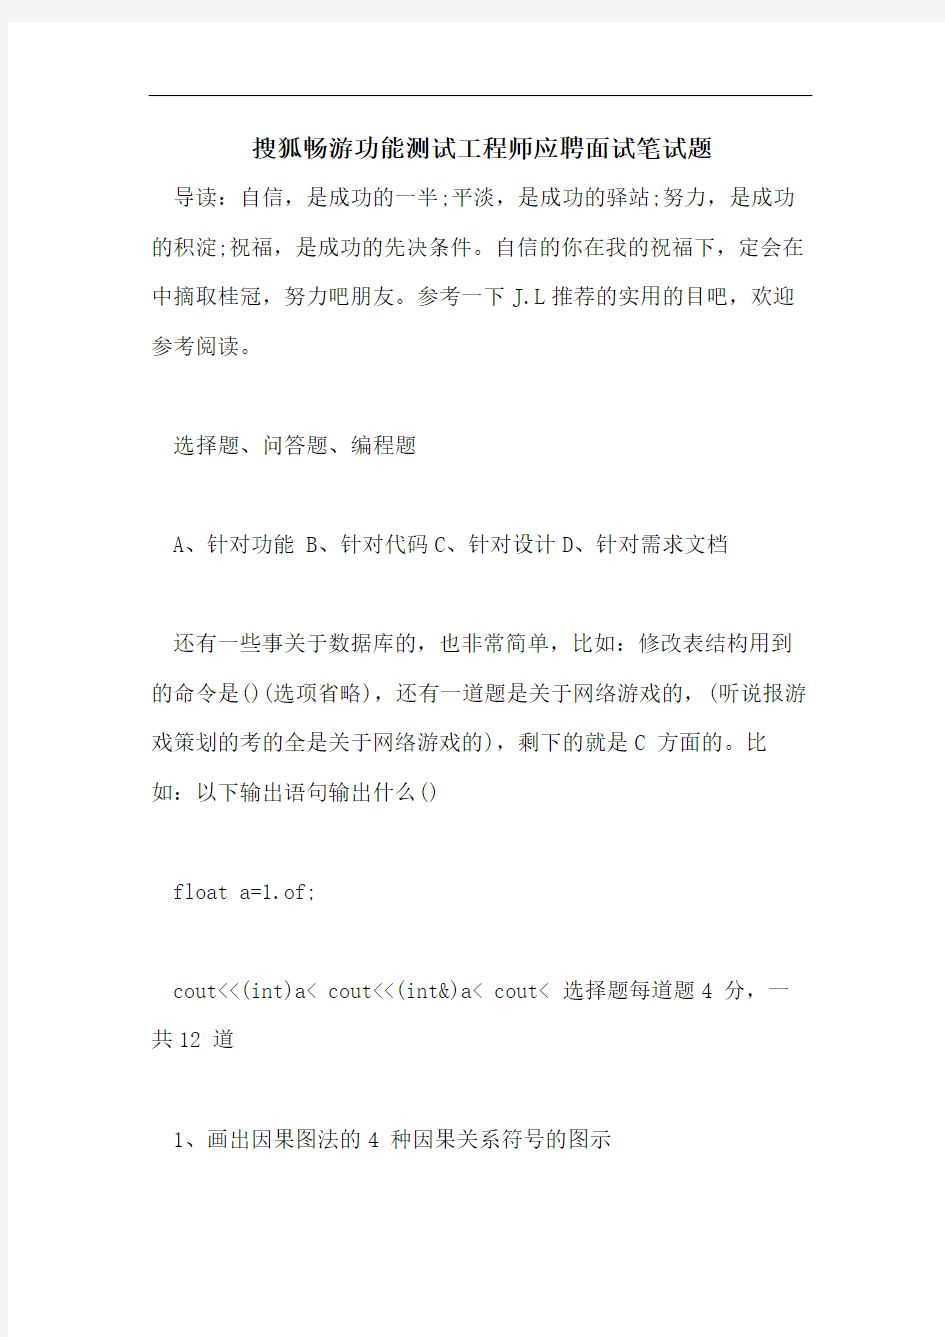 搜狐畅游功能测试工程师应聘面试笔试题